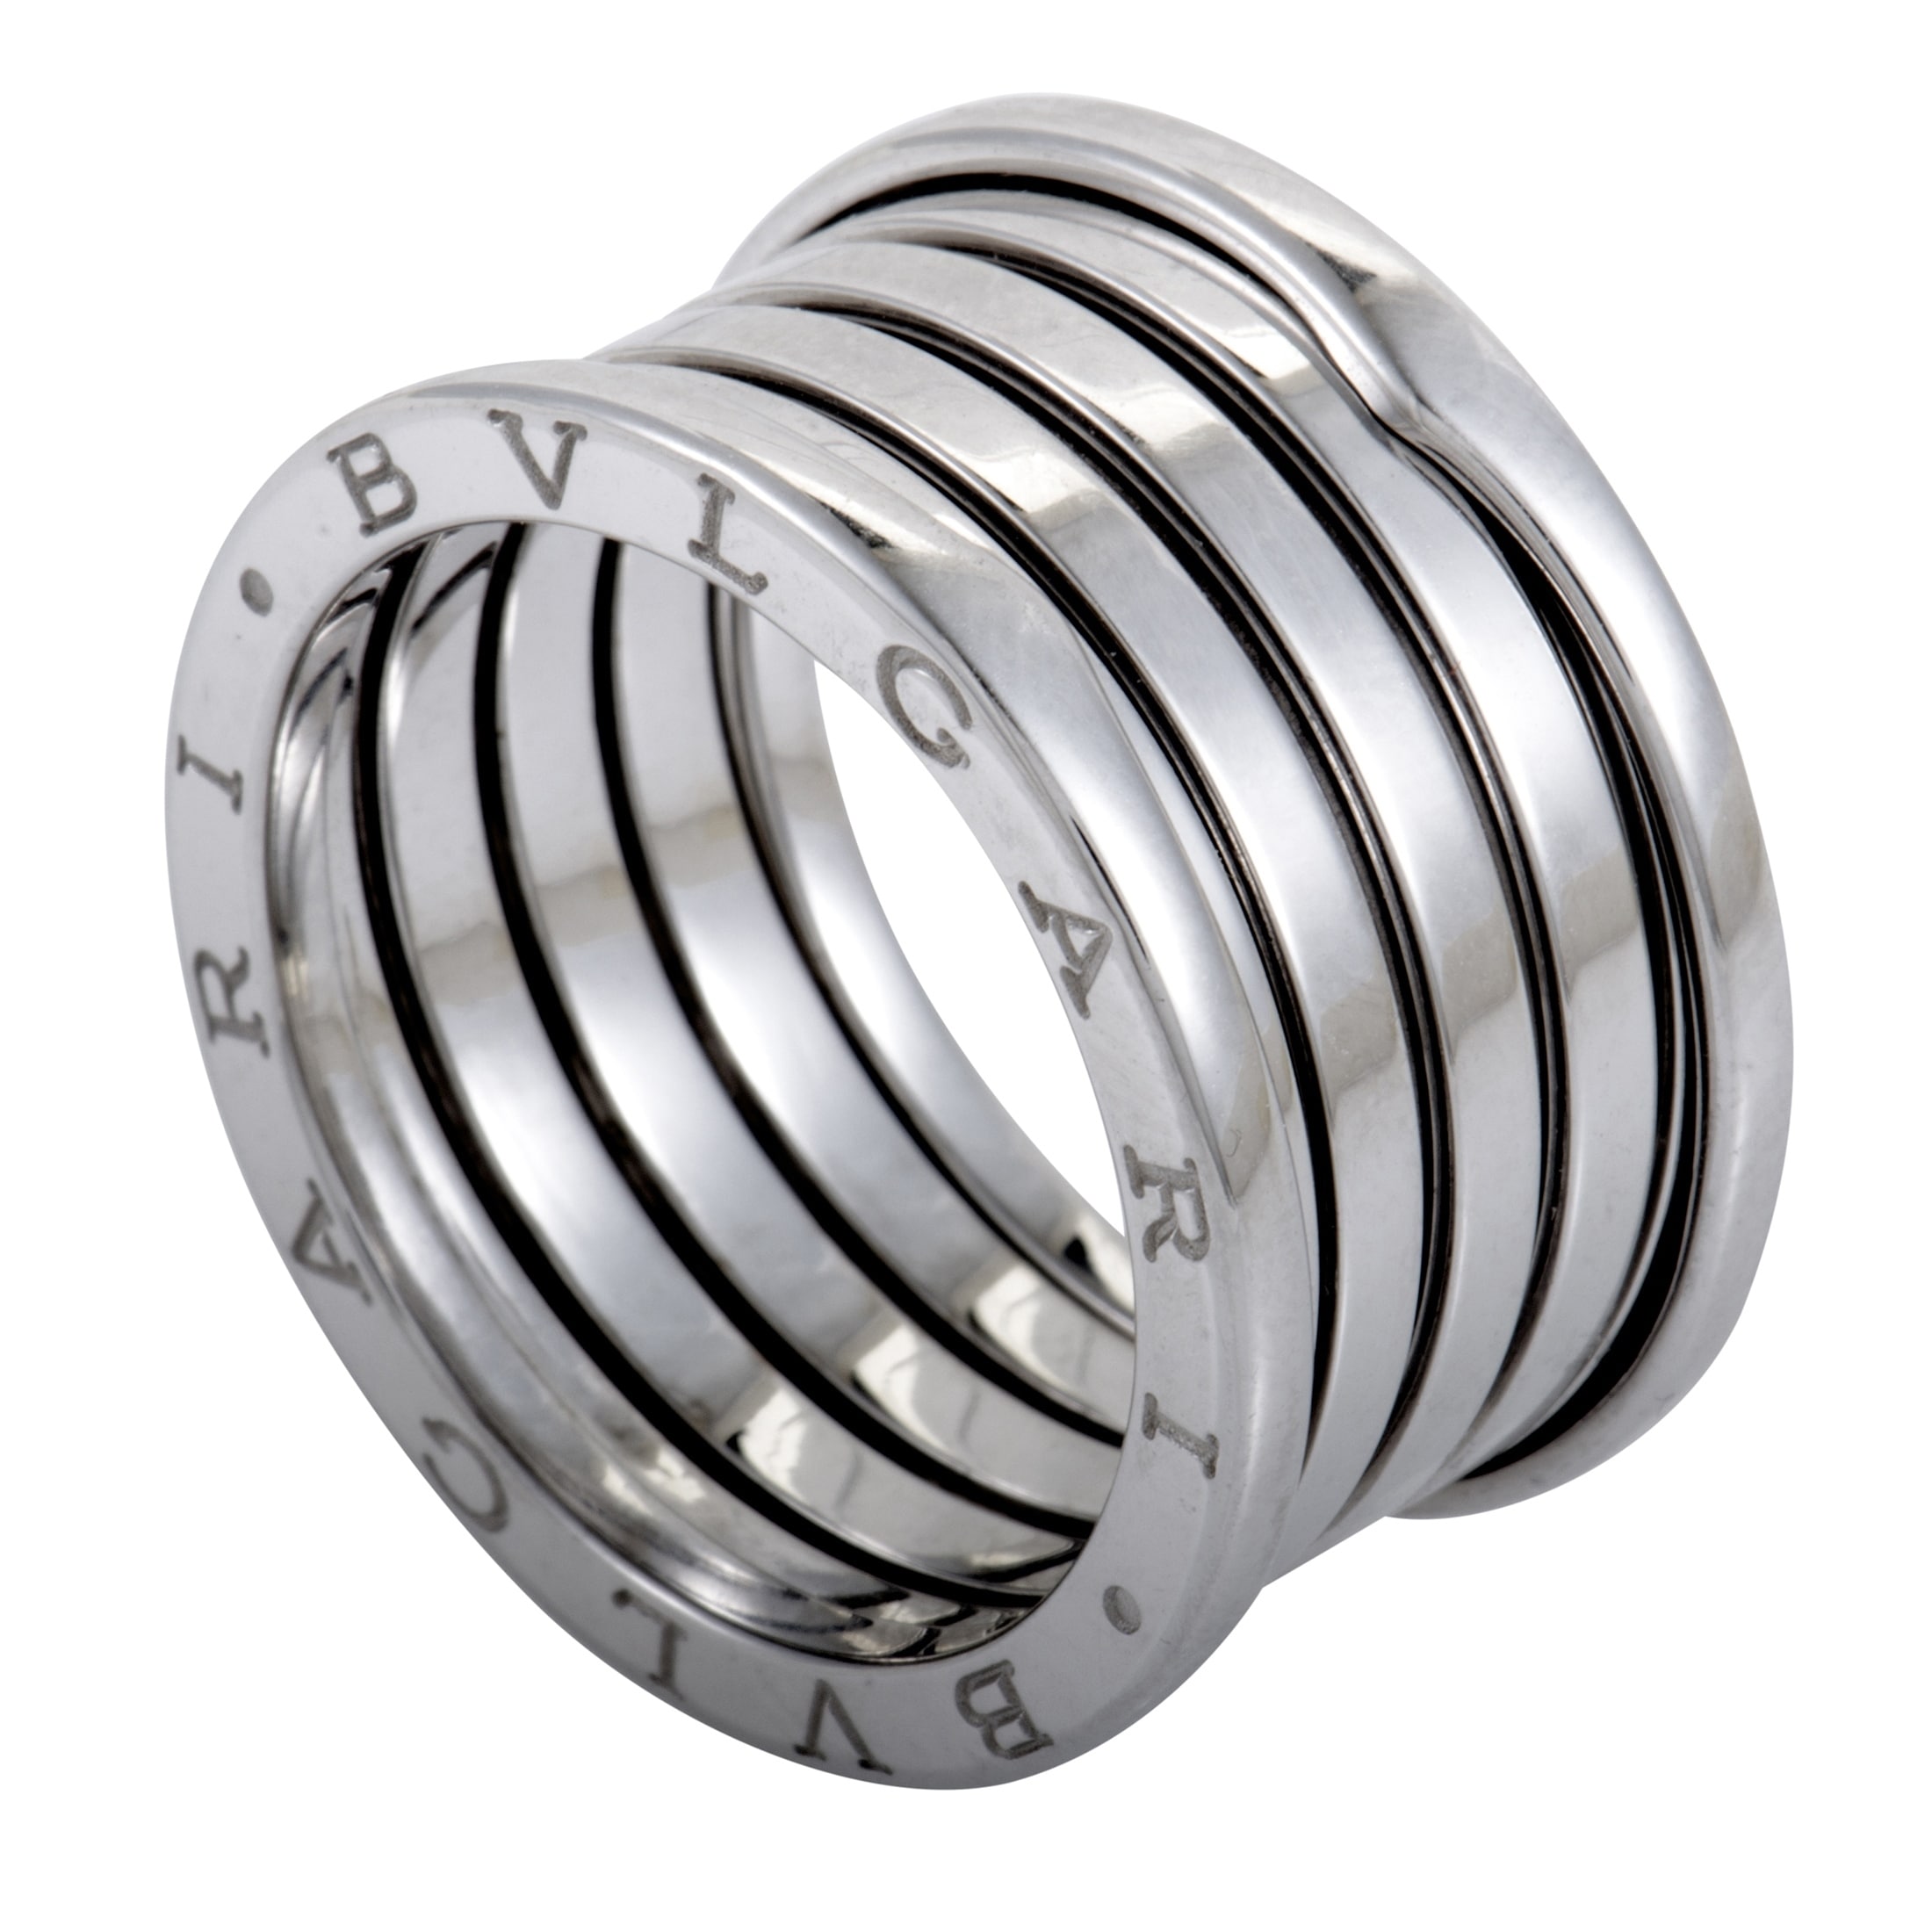 bvlgari black silver ring